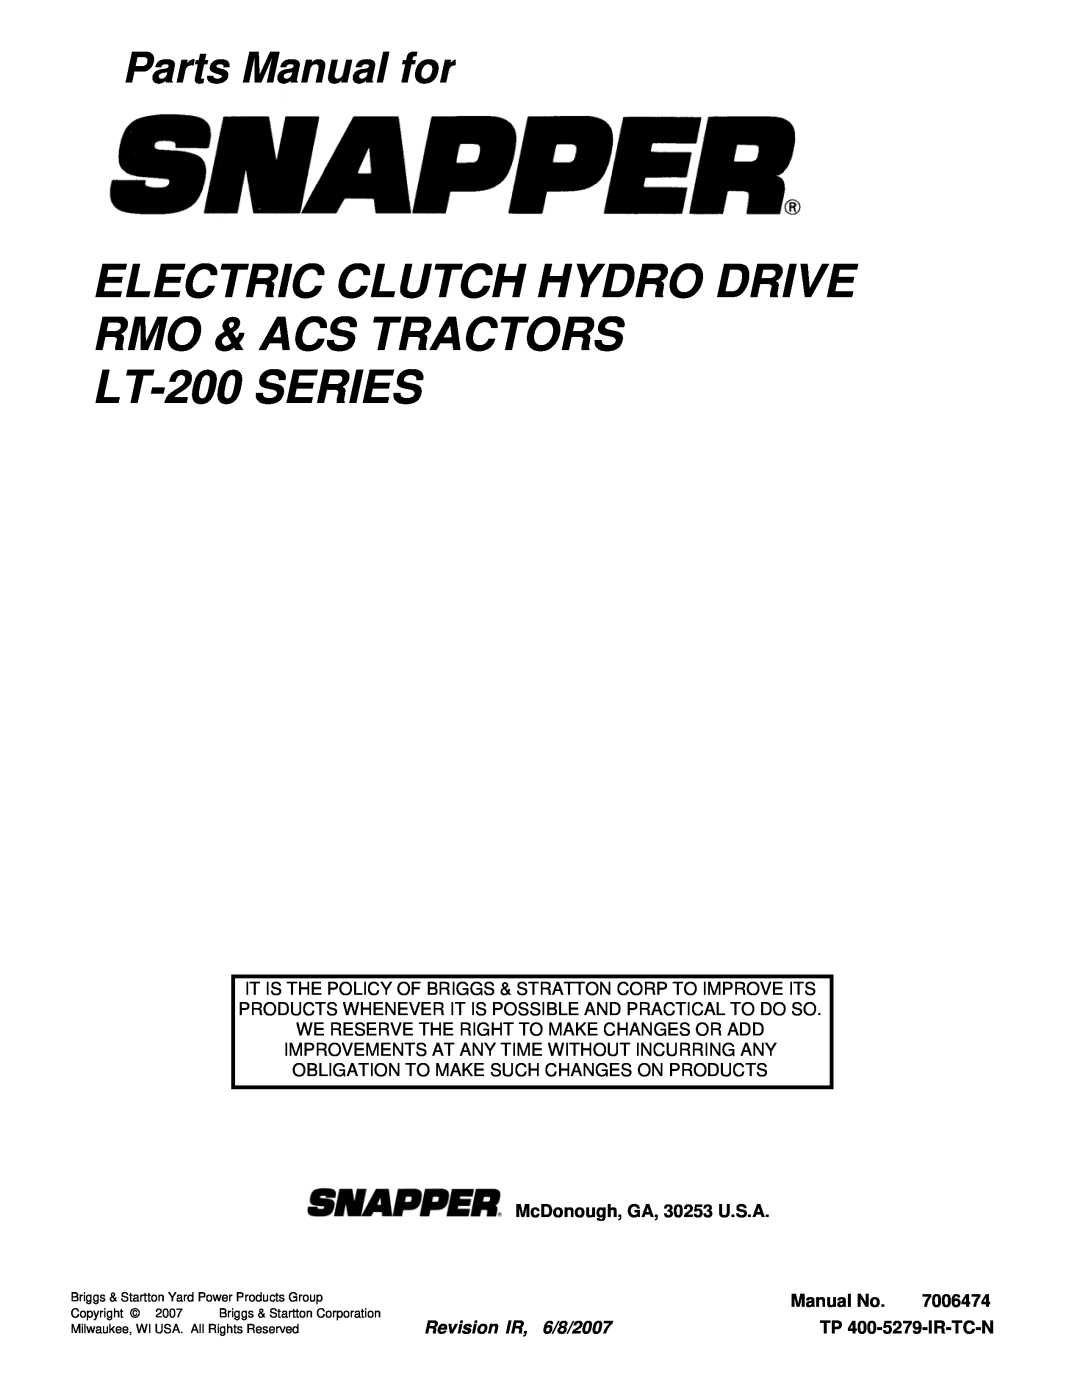 Snapper LT18538 (2690577), ELT18538 manual Electric Clutch Hydro Drive Rmo & Acs Tractors, LT-200SERIES, Parts Manual for 